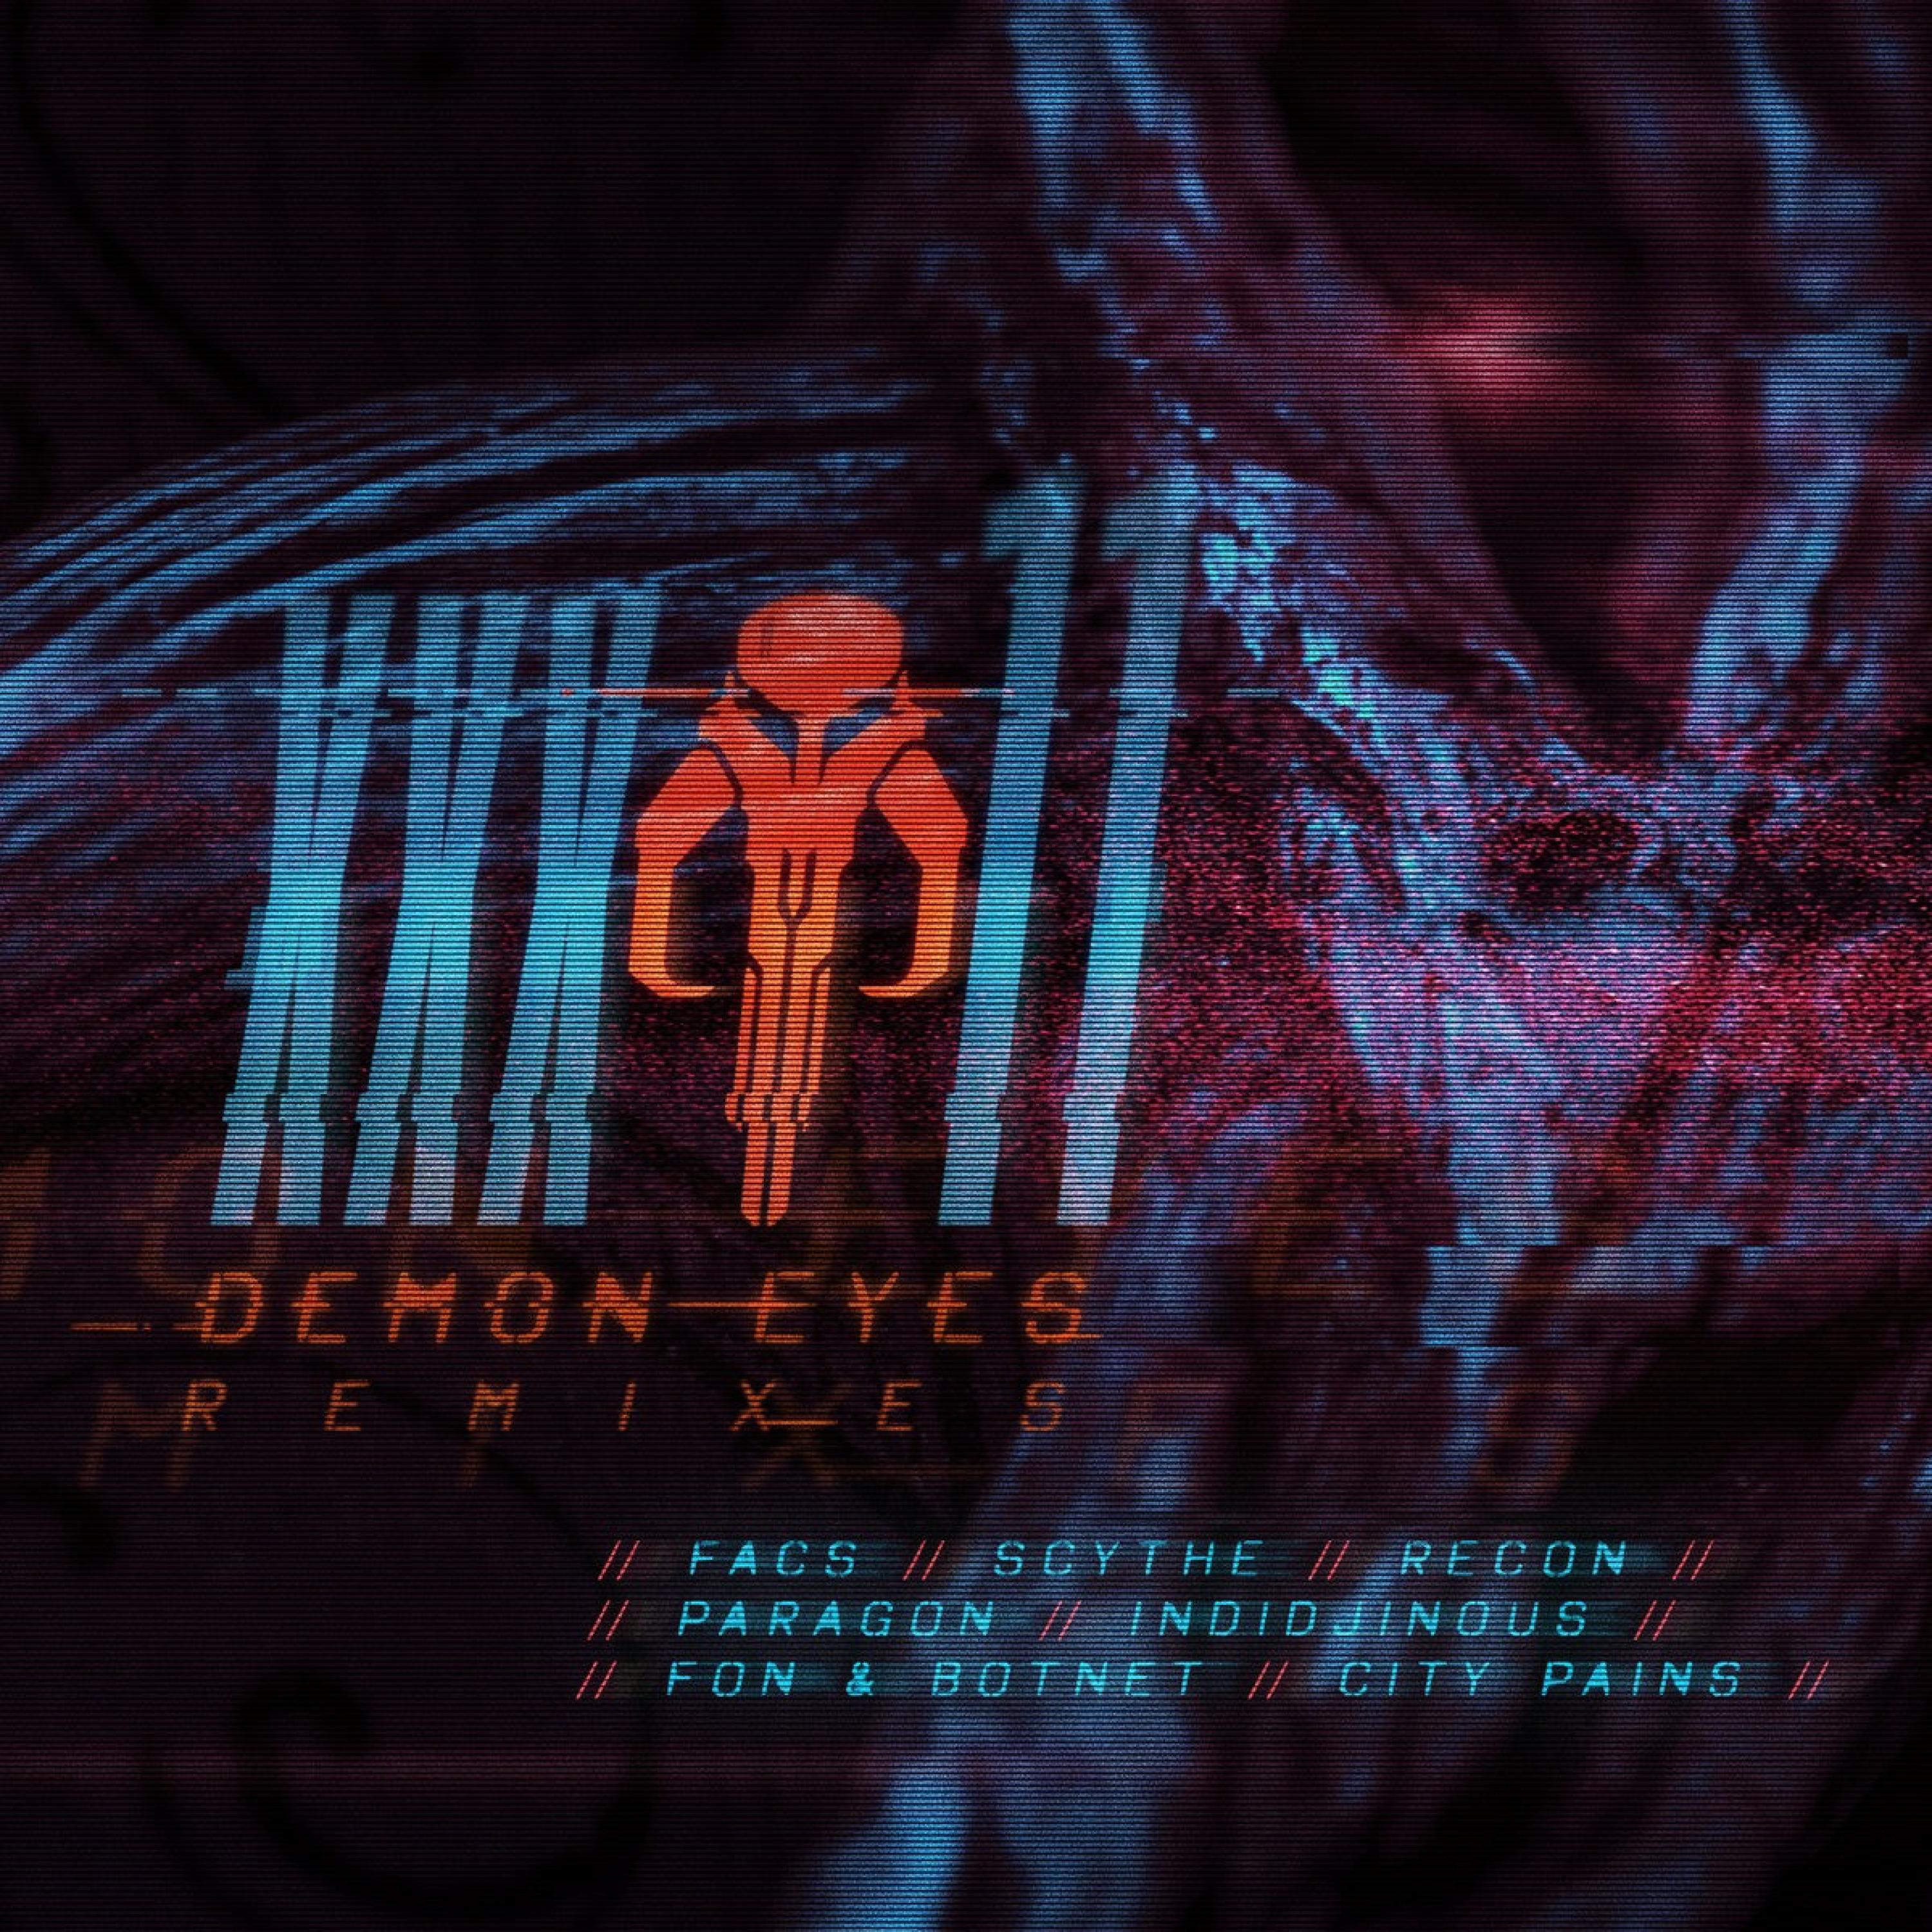 Biotic Records - Demon Eyes (feat. Facs) (Scythe Remix)